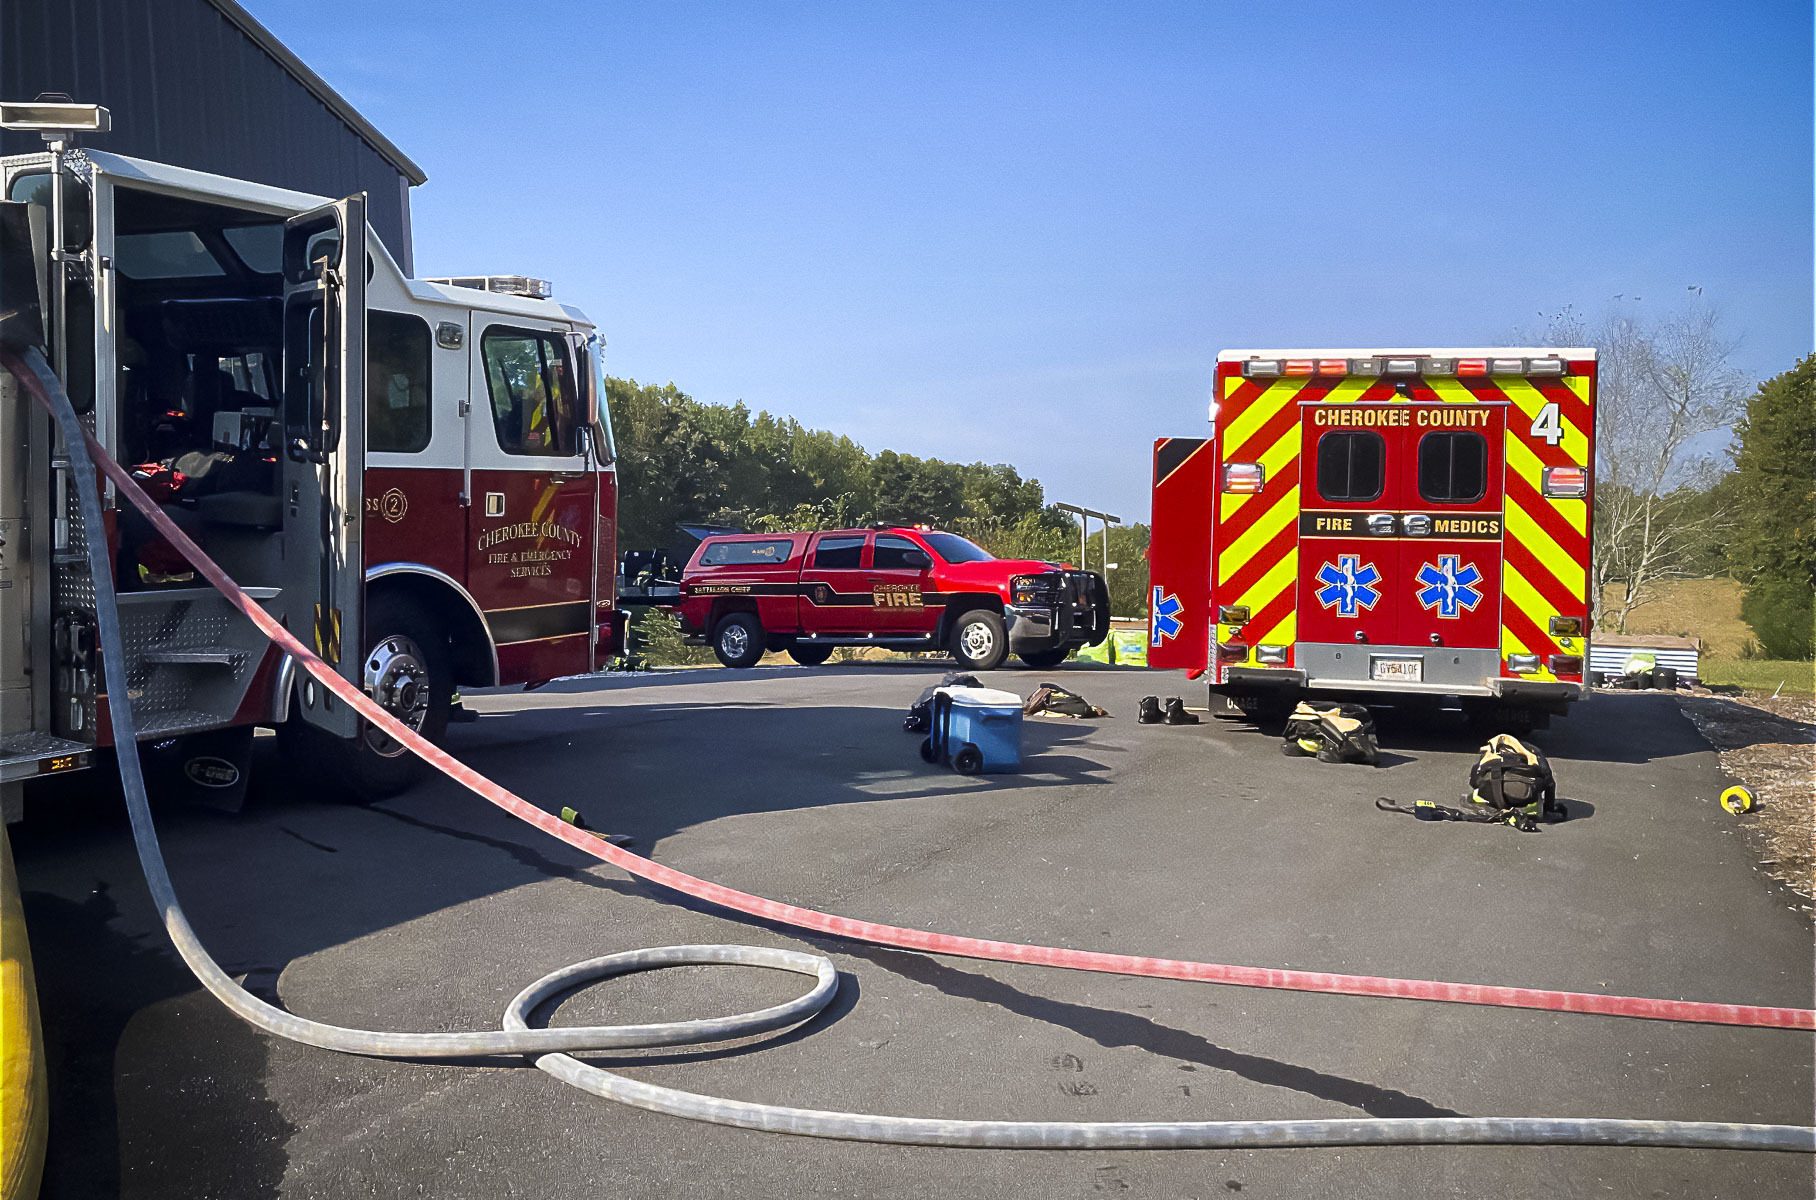 Владельцам пожароопасных Chevrolet рекомендуют парковаться подальше от других машин